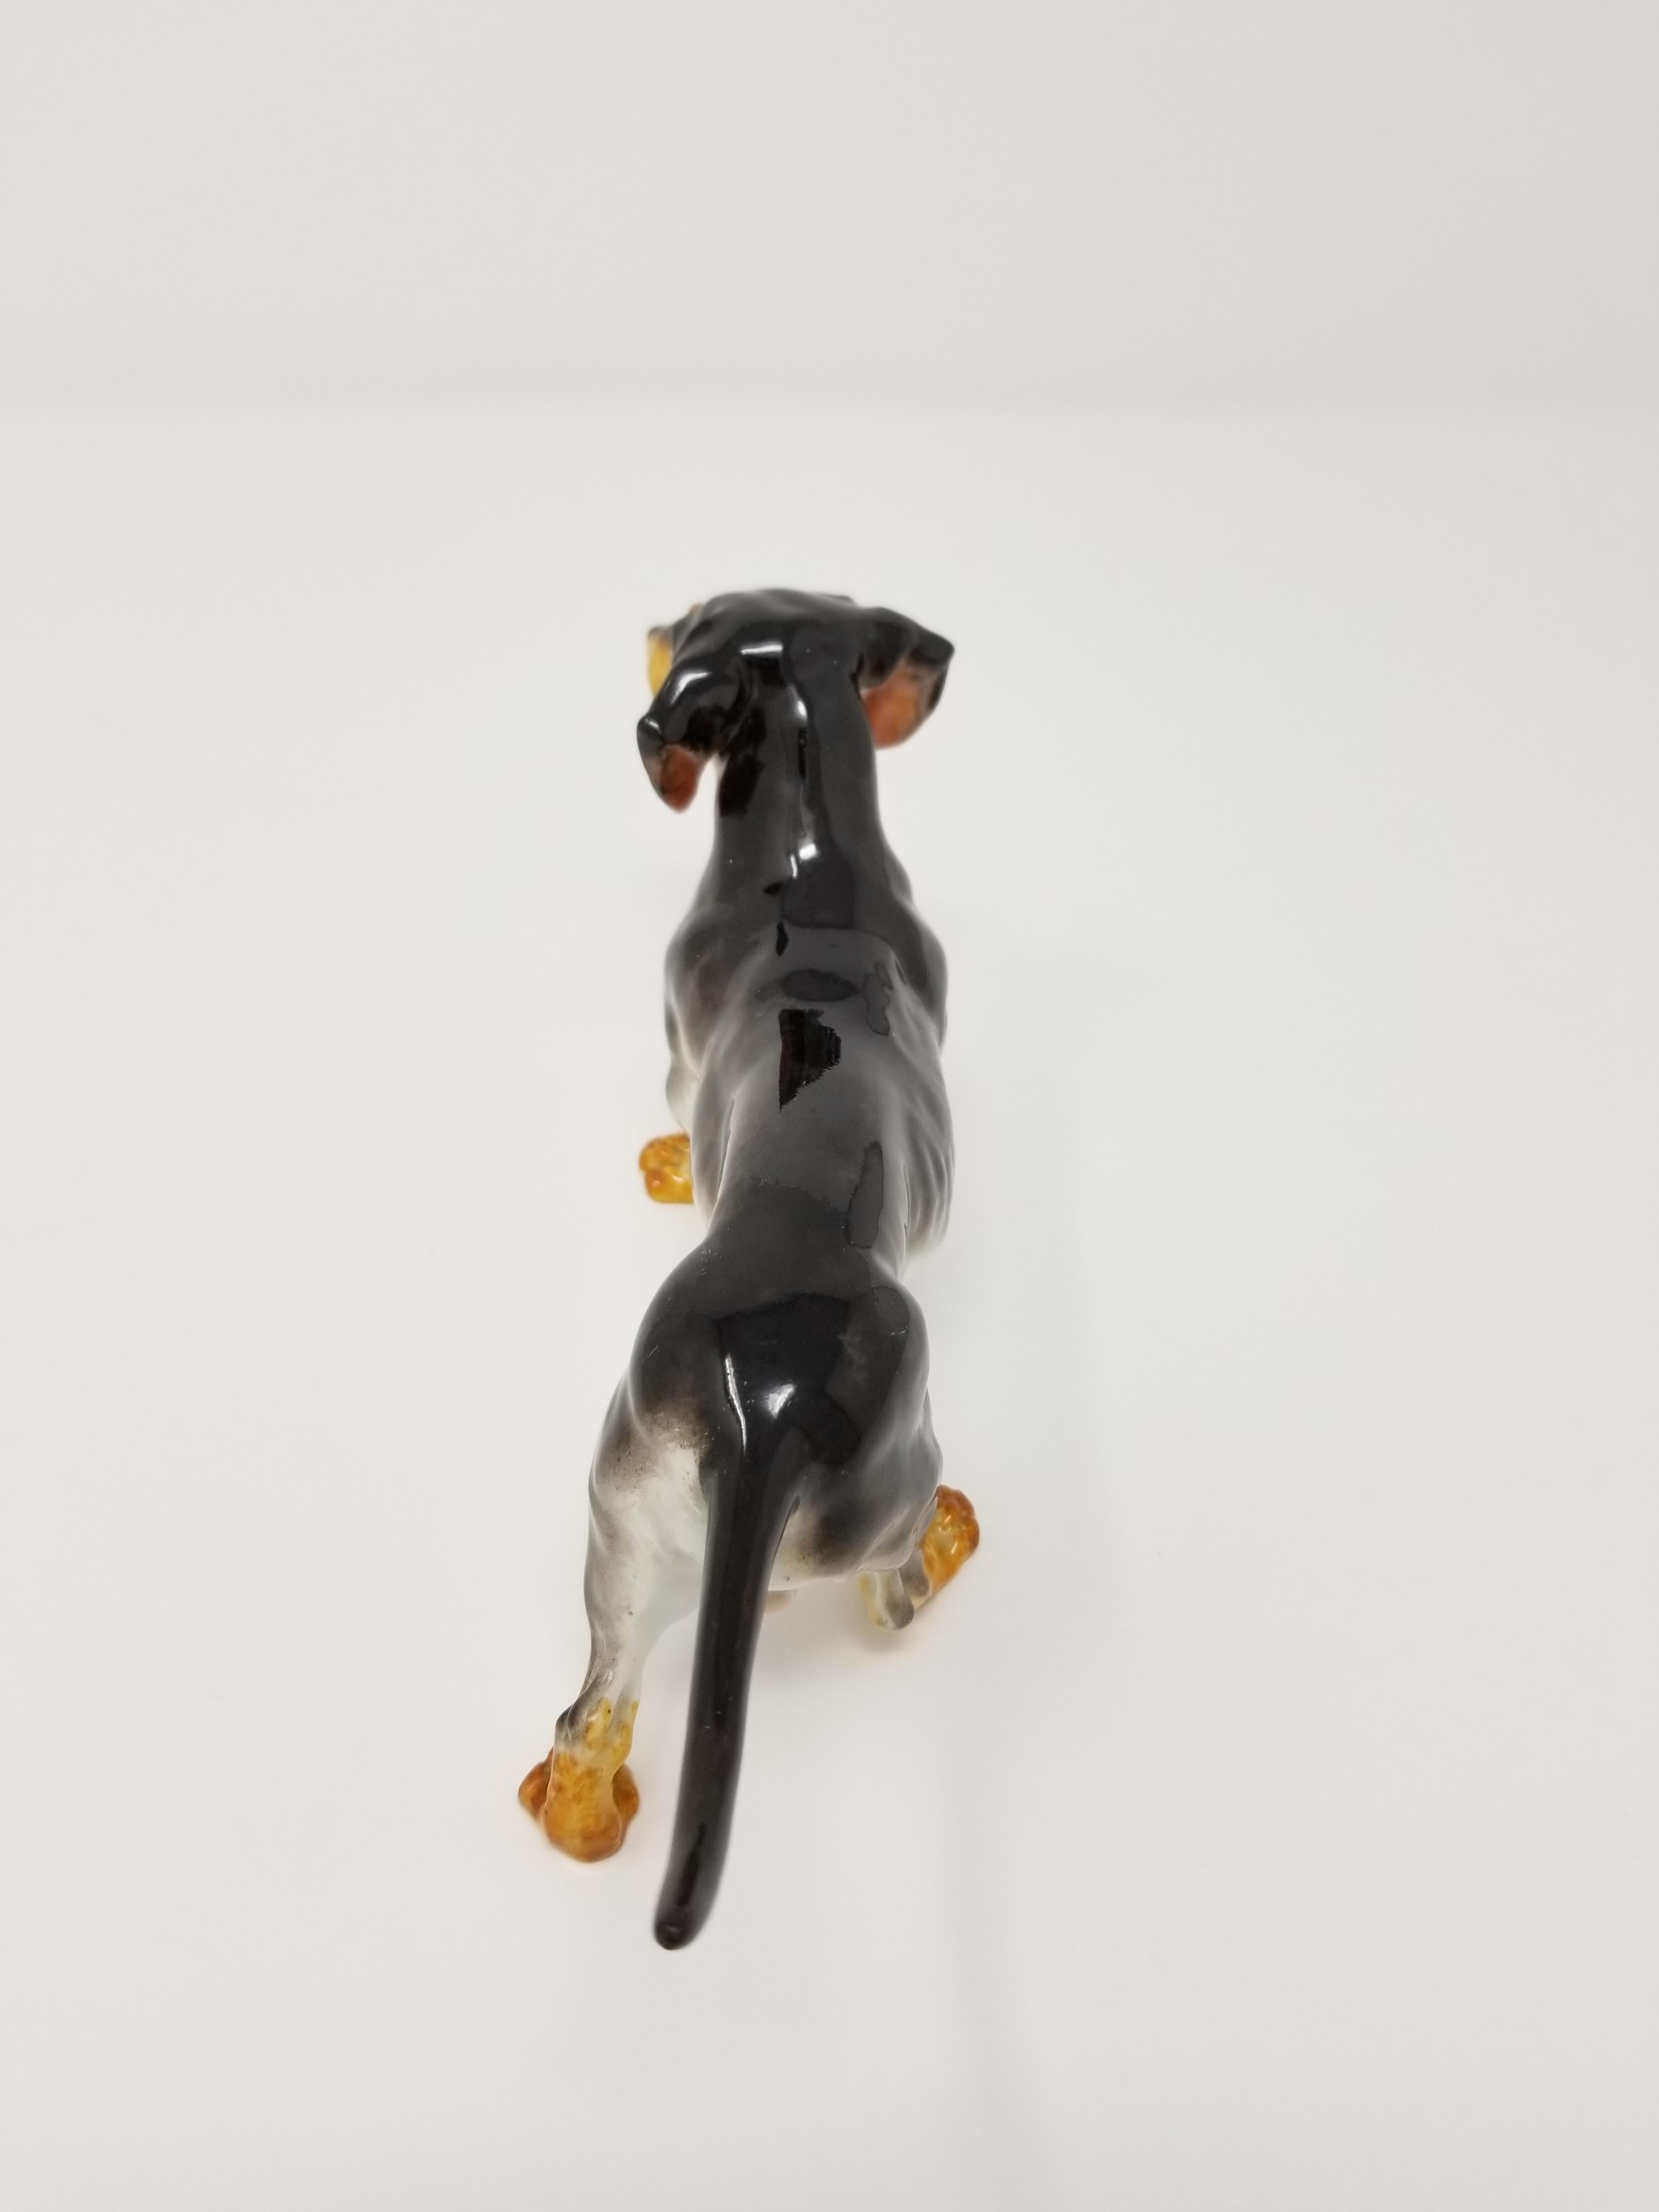 Ancienne figurine en porcelaine de Meissen représentant un chien teckel, avec une double marque d'épées croisées en bleu sous glaçure. Il s'agit d'une figurine de chien teckel très bien représentée avec une fourrure supérieure noire, une fourrure